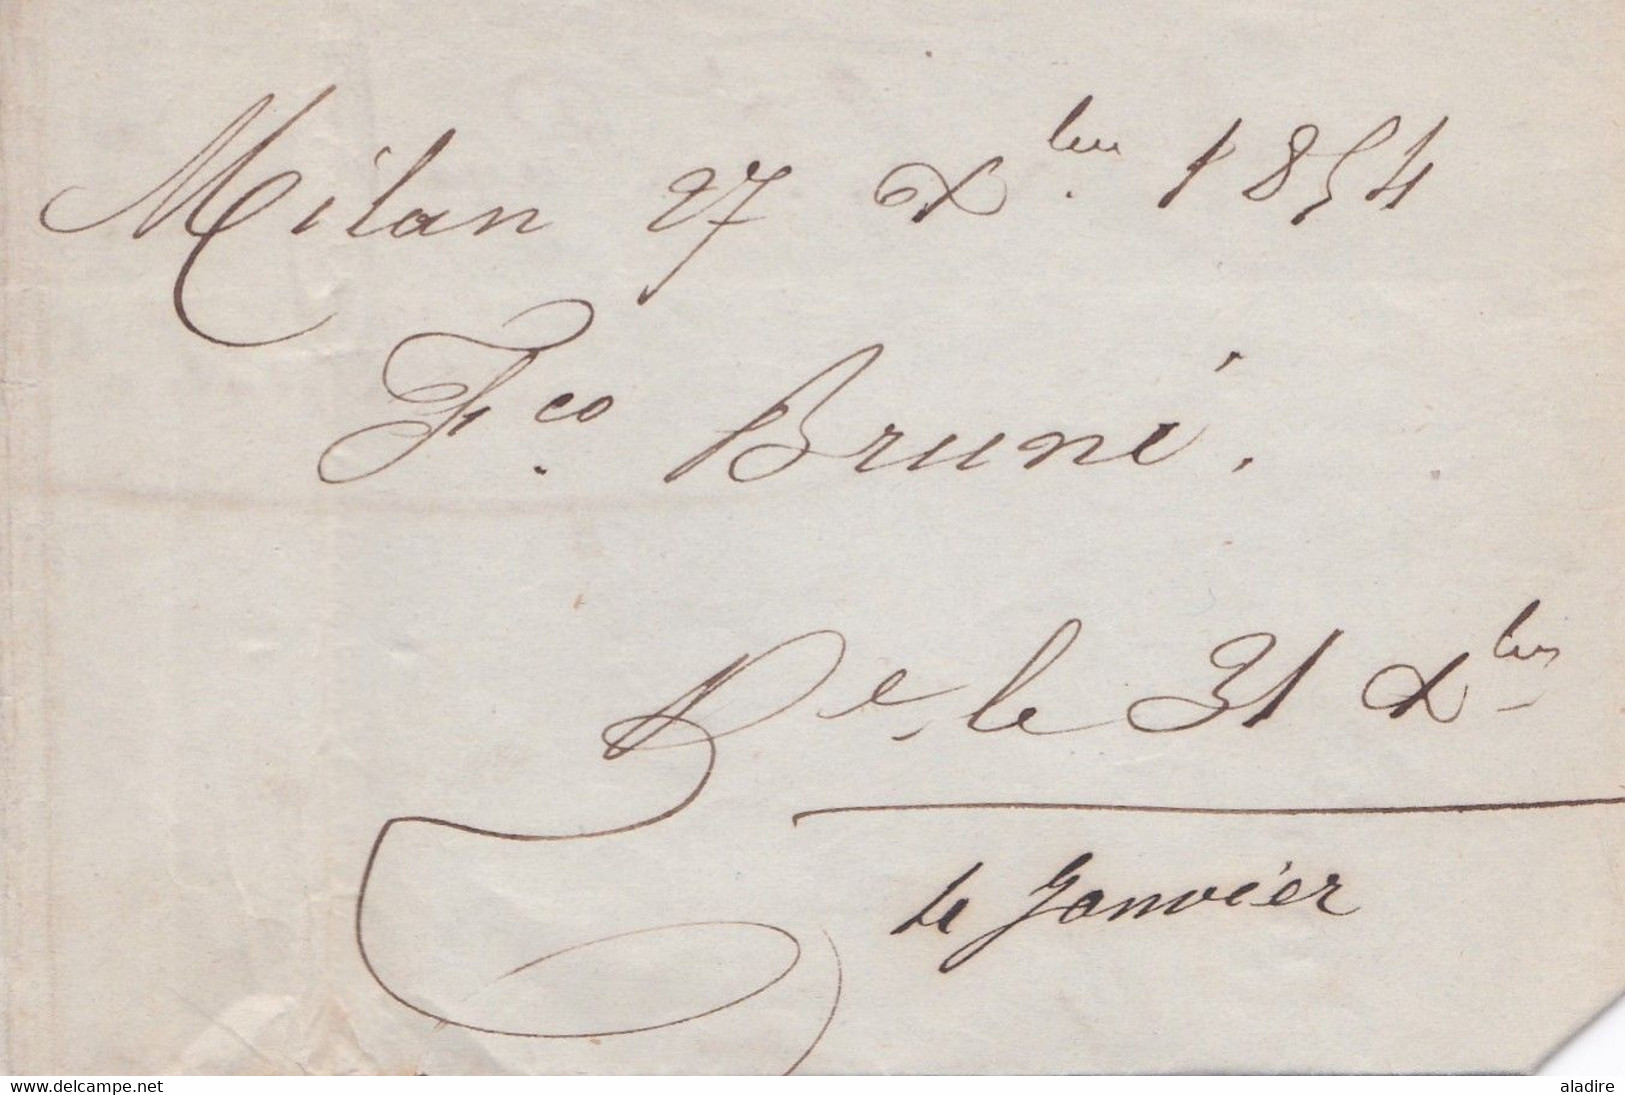 1854 - Lettre pliée avec correspondance de Milano vers Marseille, France - entrée Autriche Besancon - taxe 10